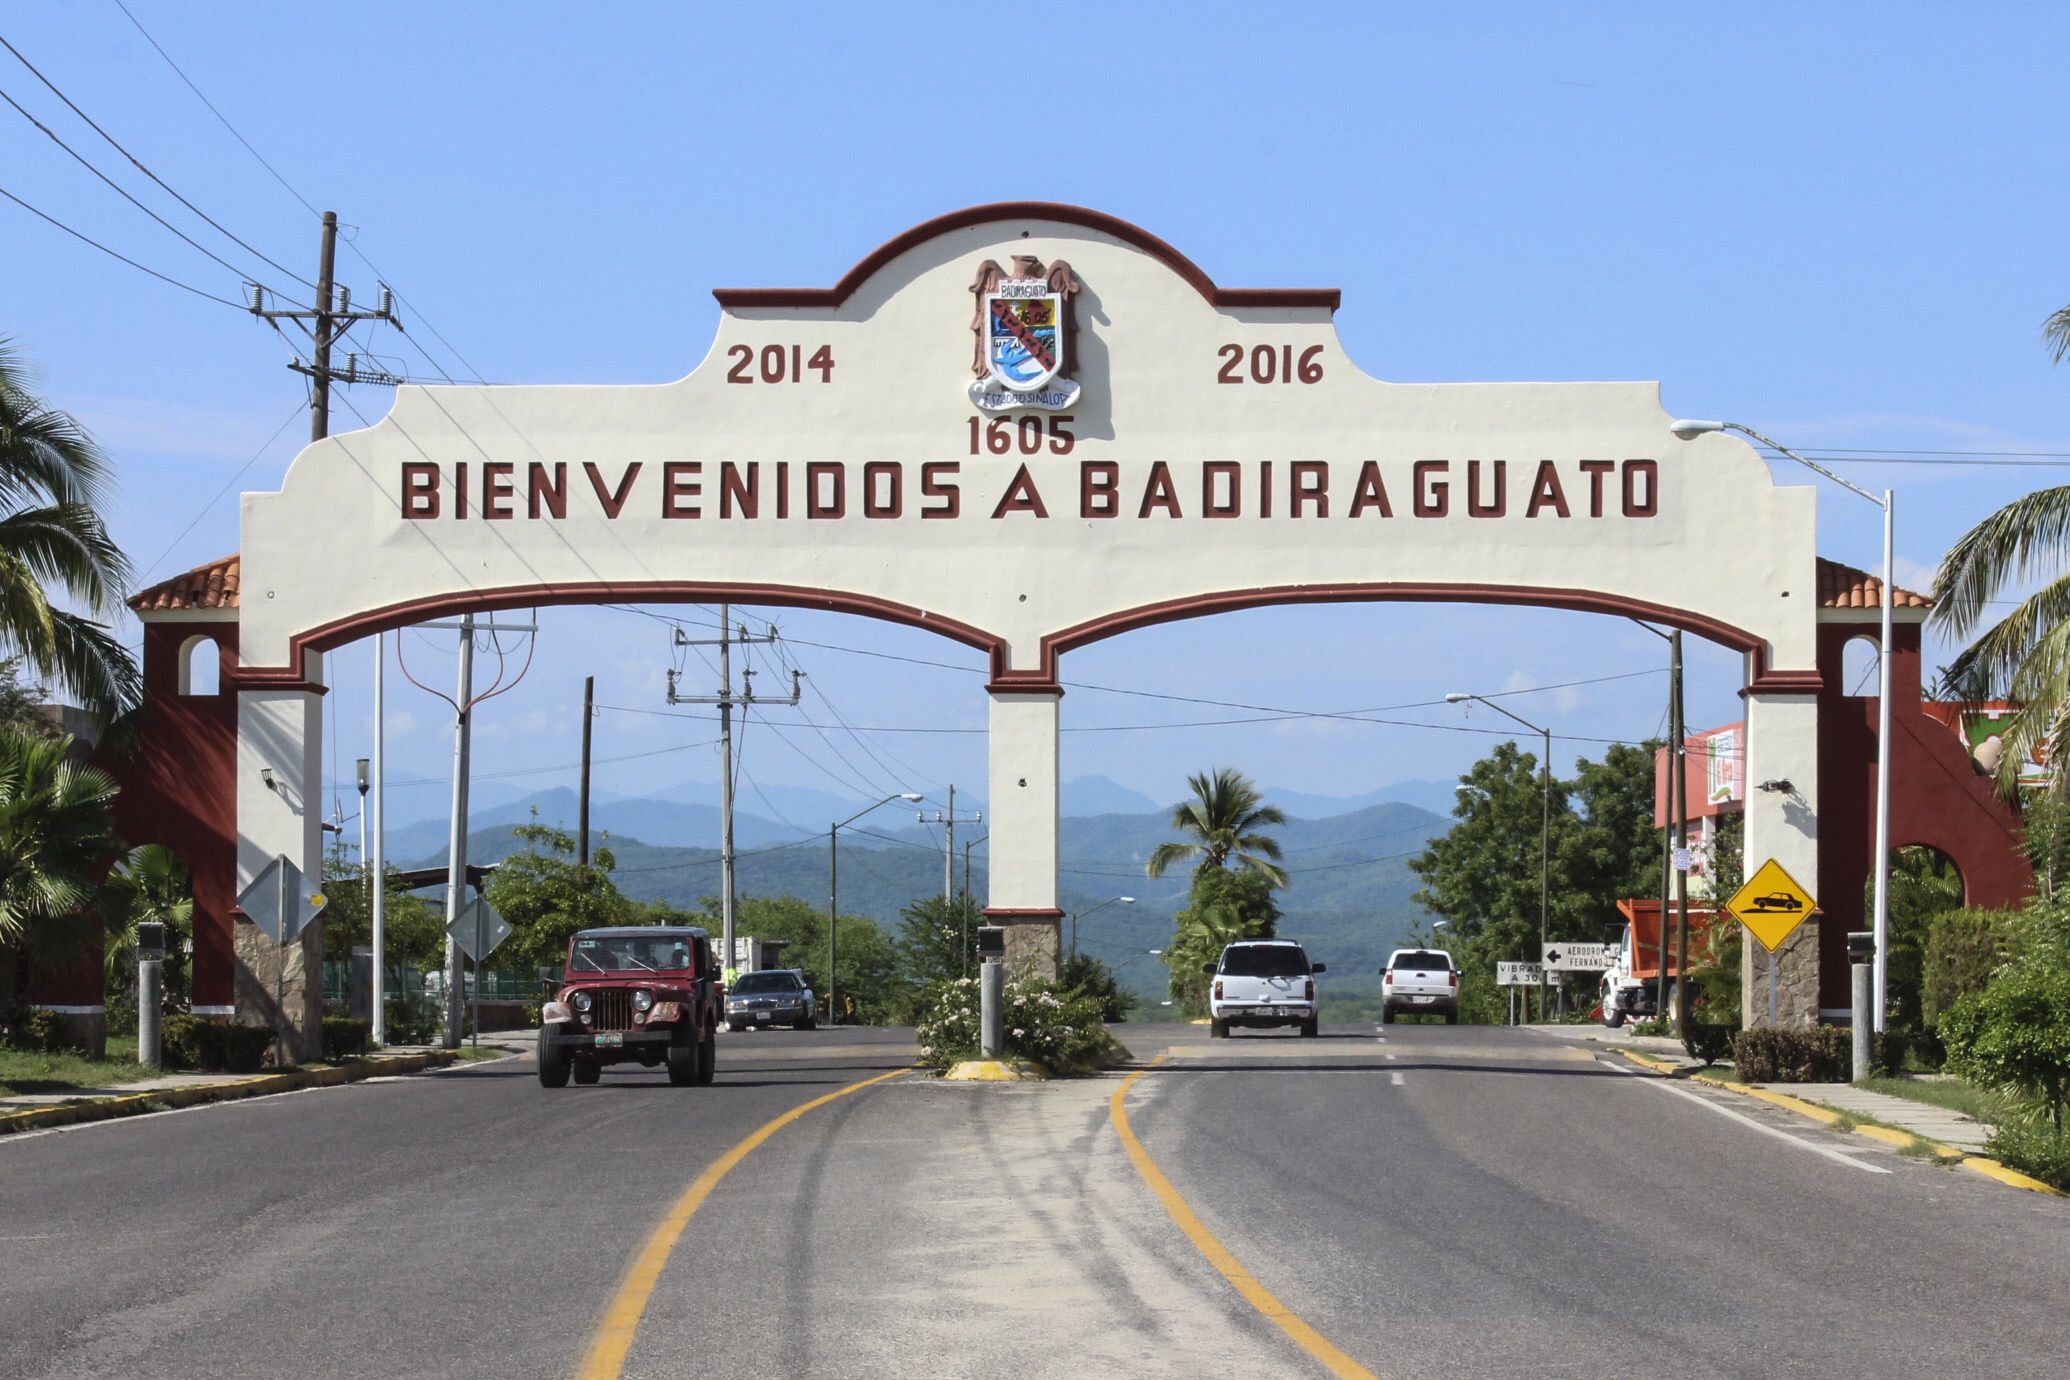 La ciudad de Badiraguato, Sinaloa, donde creció uno de los capos más peligrosos del mundo (Foto: Cuartoscuro)